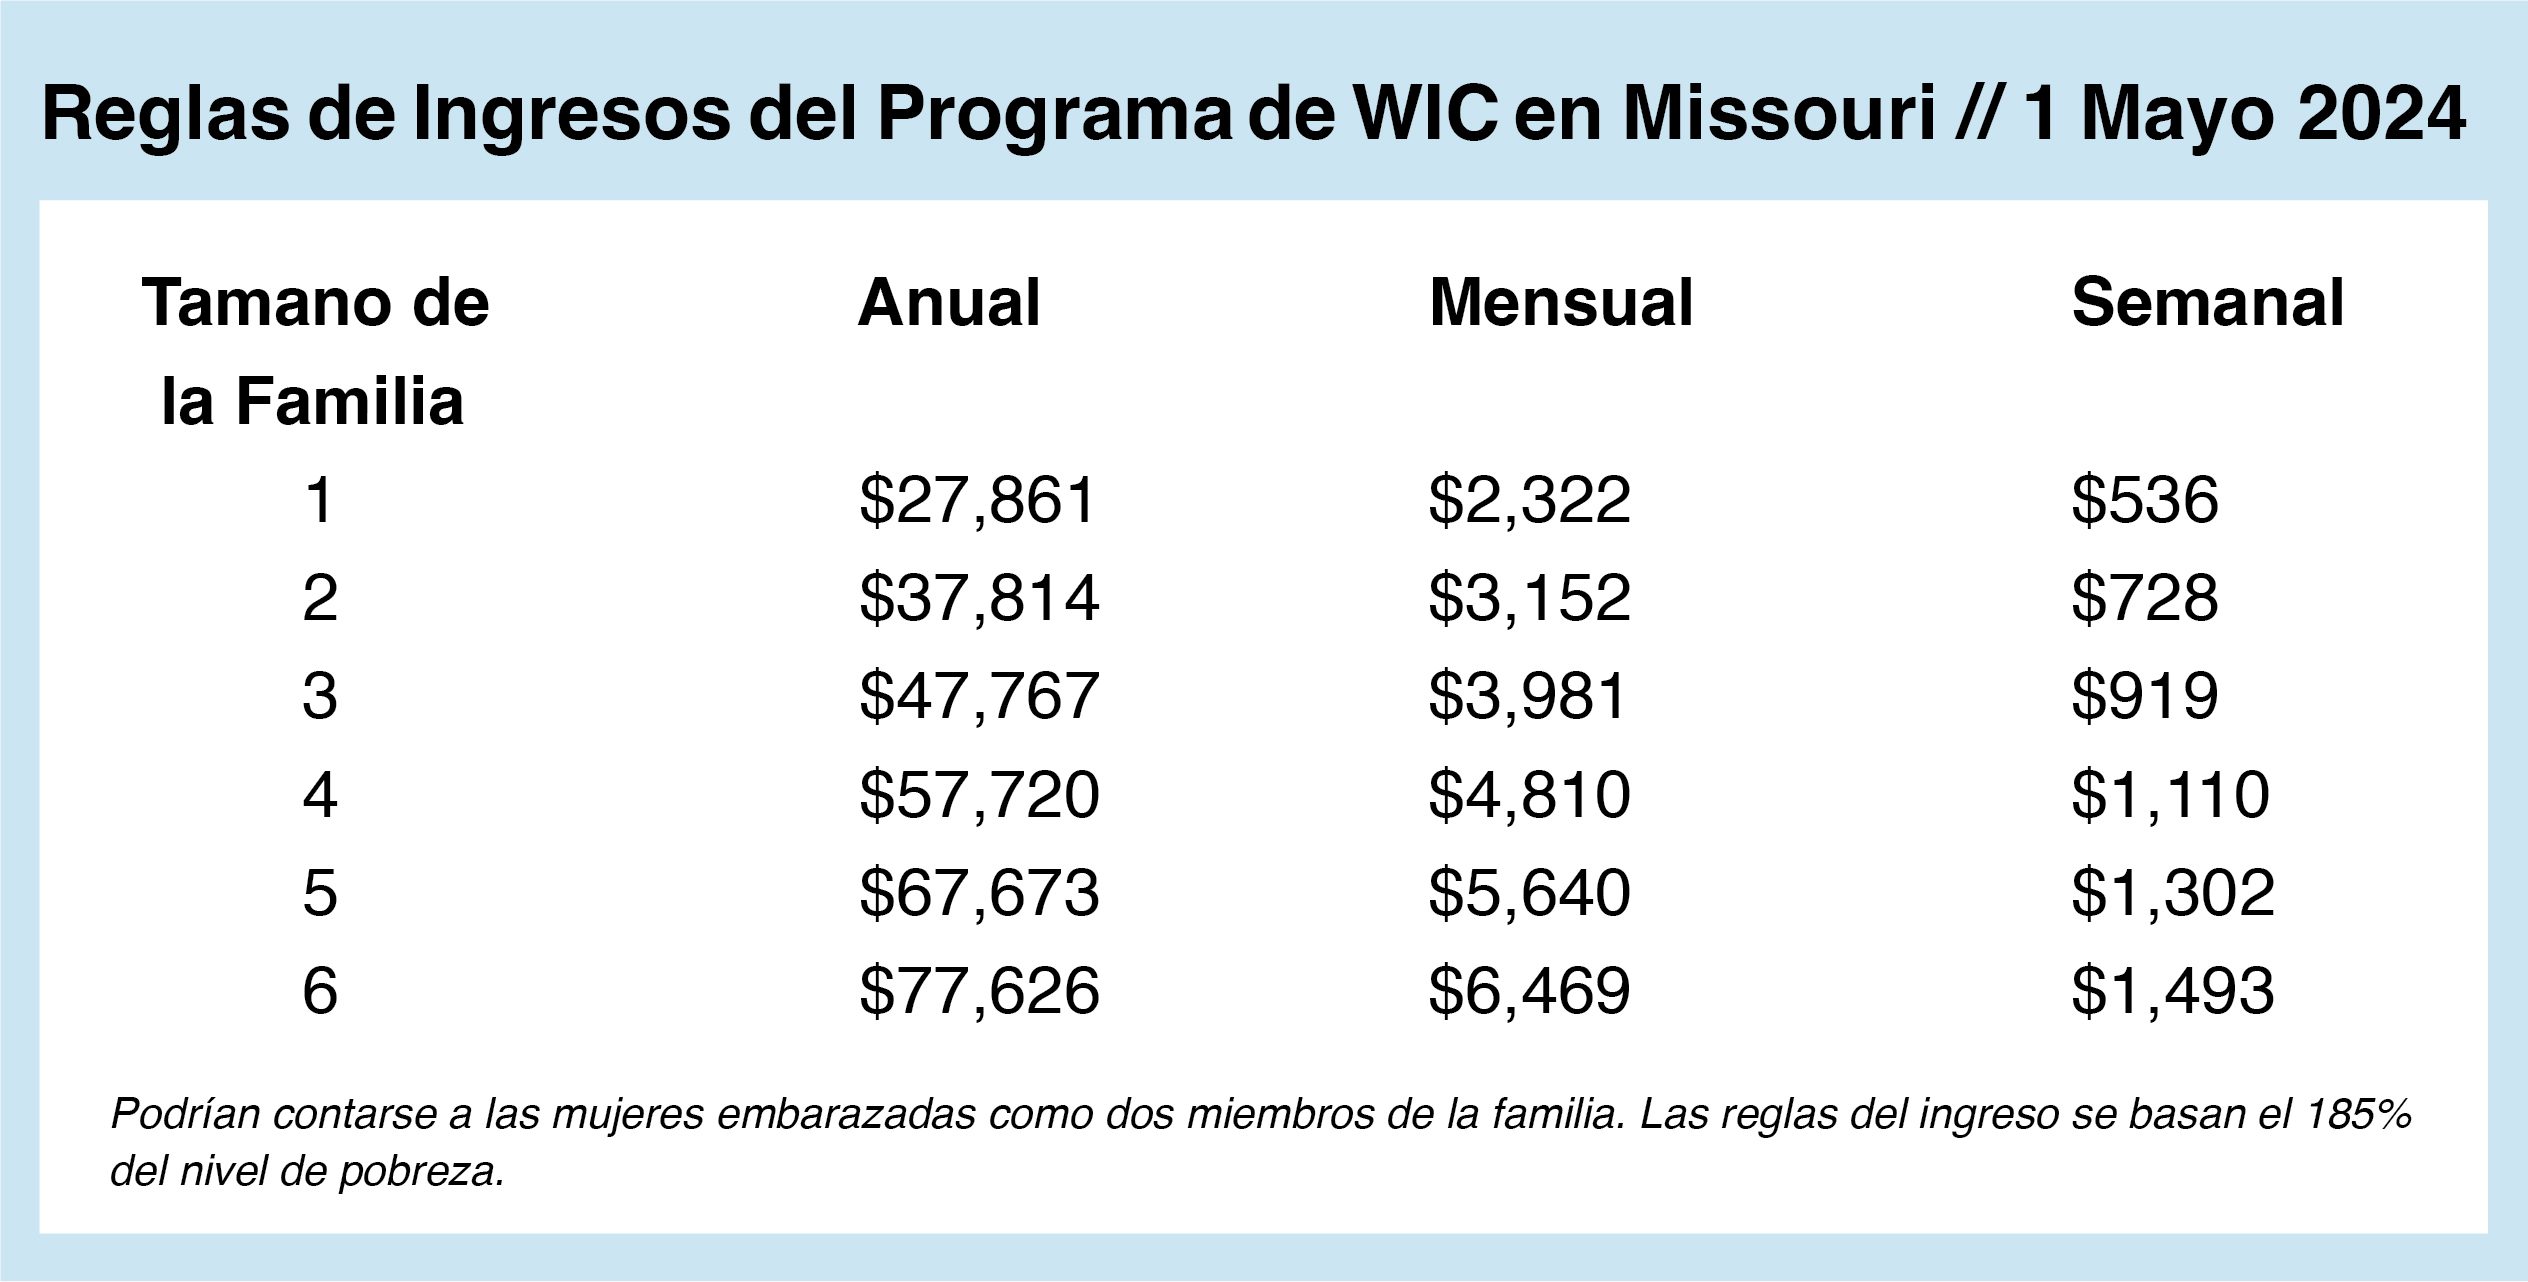 Missouri WIC Income Guidelines